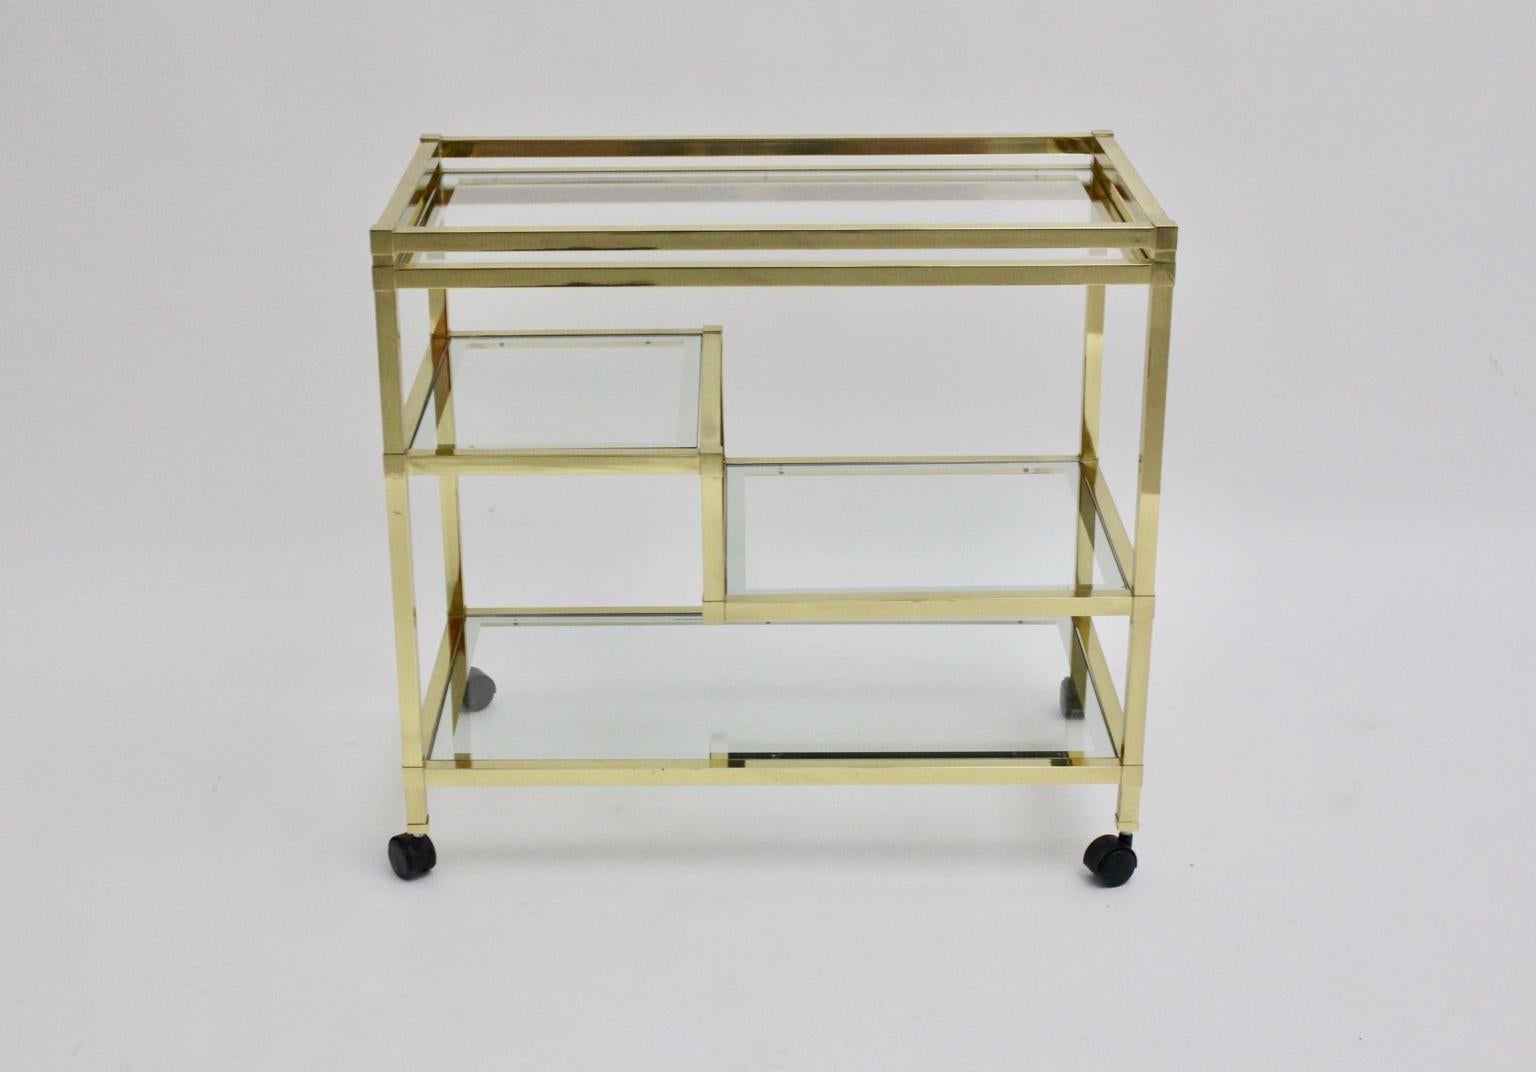 Ce chariot de bar dans le style de Romeo Rega est composé d'un cadre doré et de quatre plaques de verre de différentes tailles.
Les plaques de verre sont entourées d'une bordure en argent.
Le chariot de bar comporte également 4 roues pour une bonne